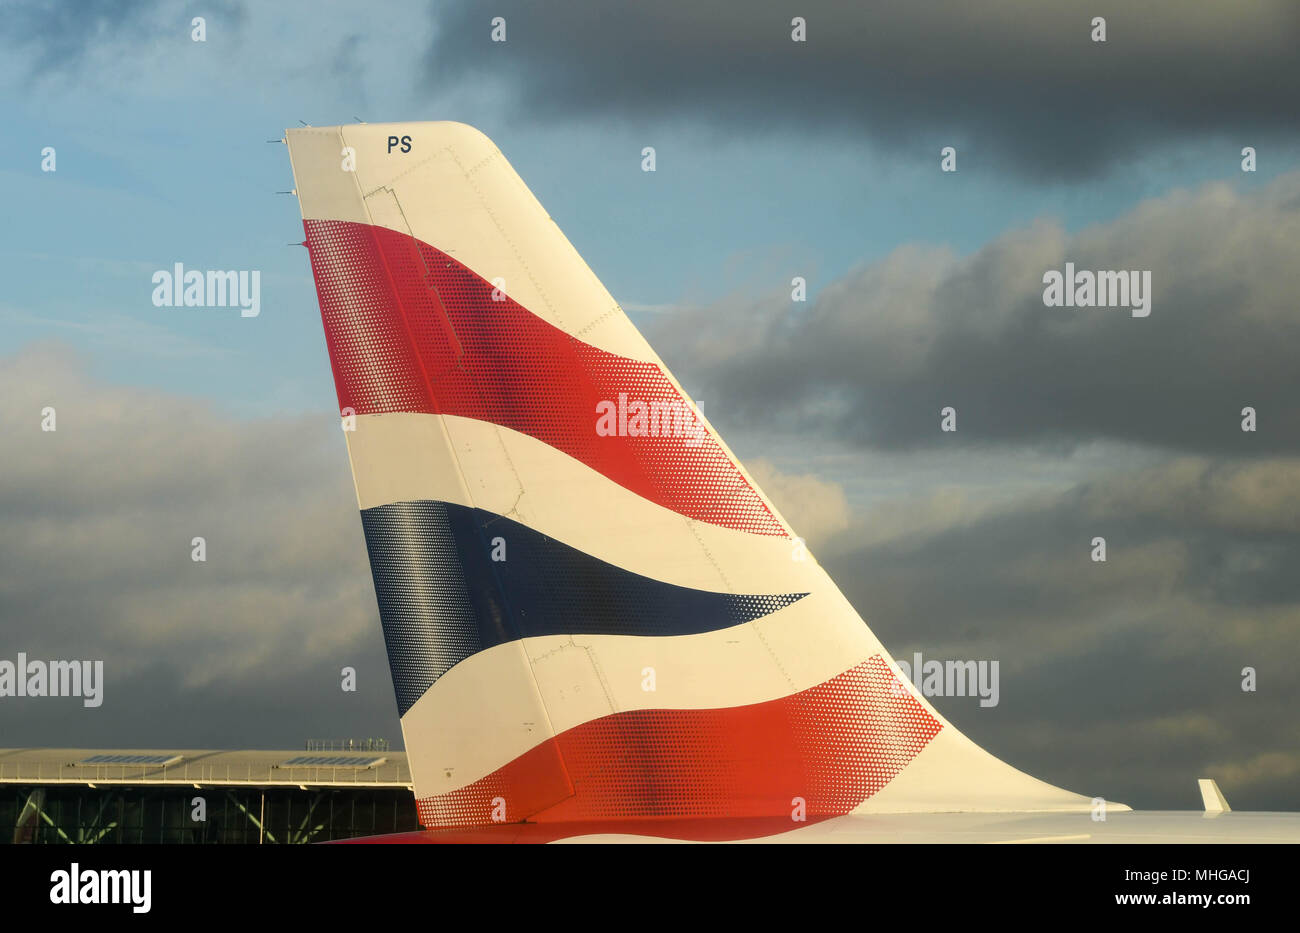 In prossimità della coda di un British Airways Airbus a getto di passeggeri all'Aeroporto di Londra Heathrow contro un cielo nuvoloso scuro Foto Stock